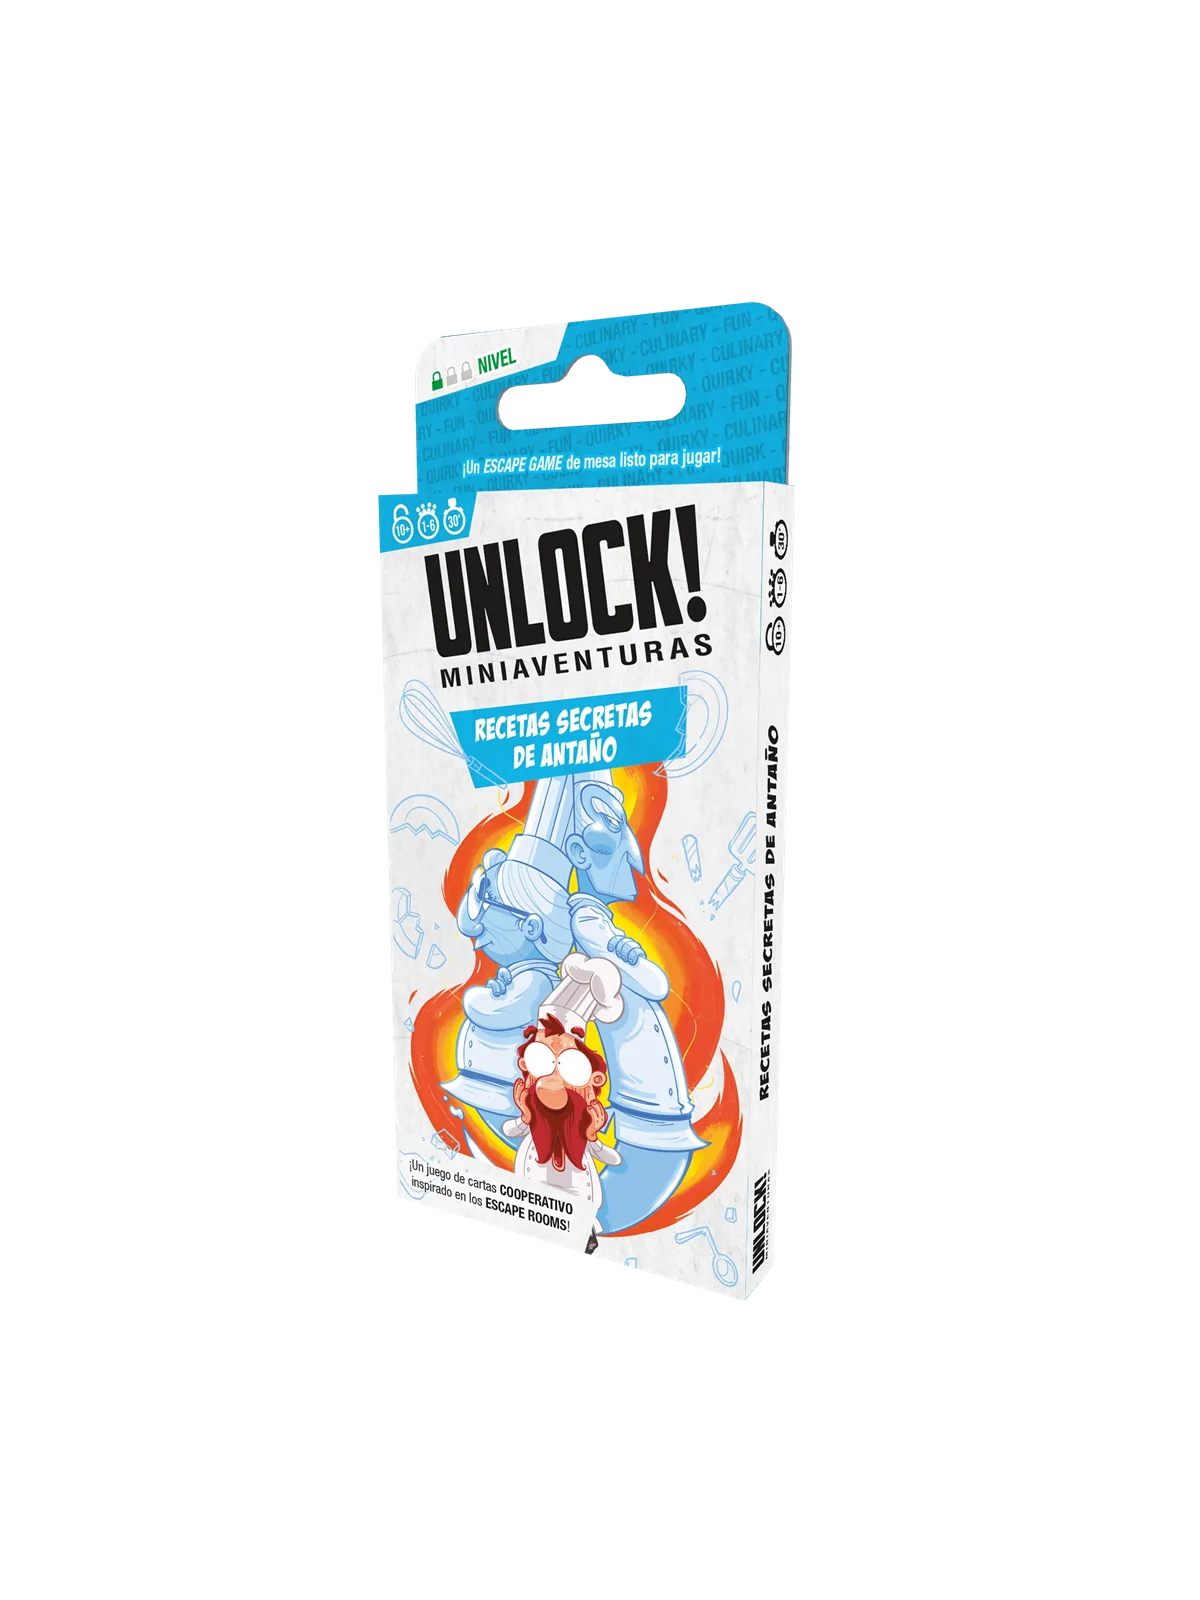 Comprar Unlock! Miniaventuras Recetas Secretas de Antaño barato al mej